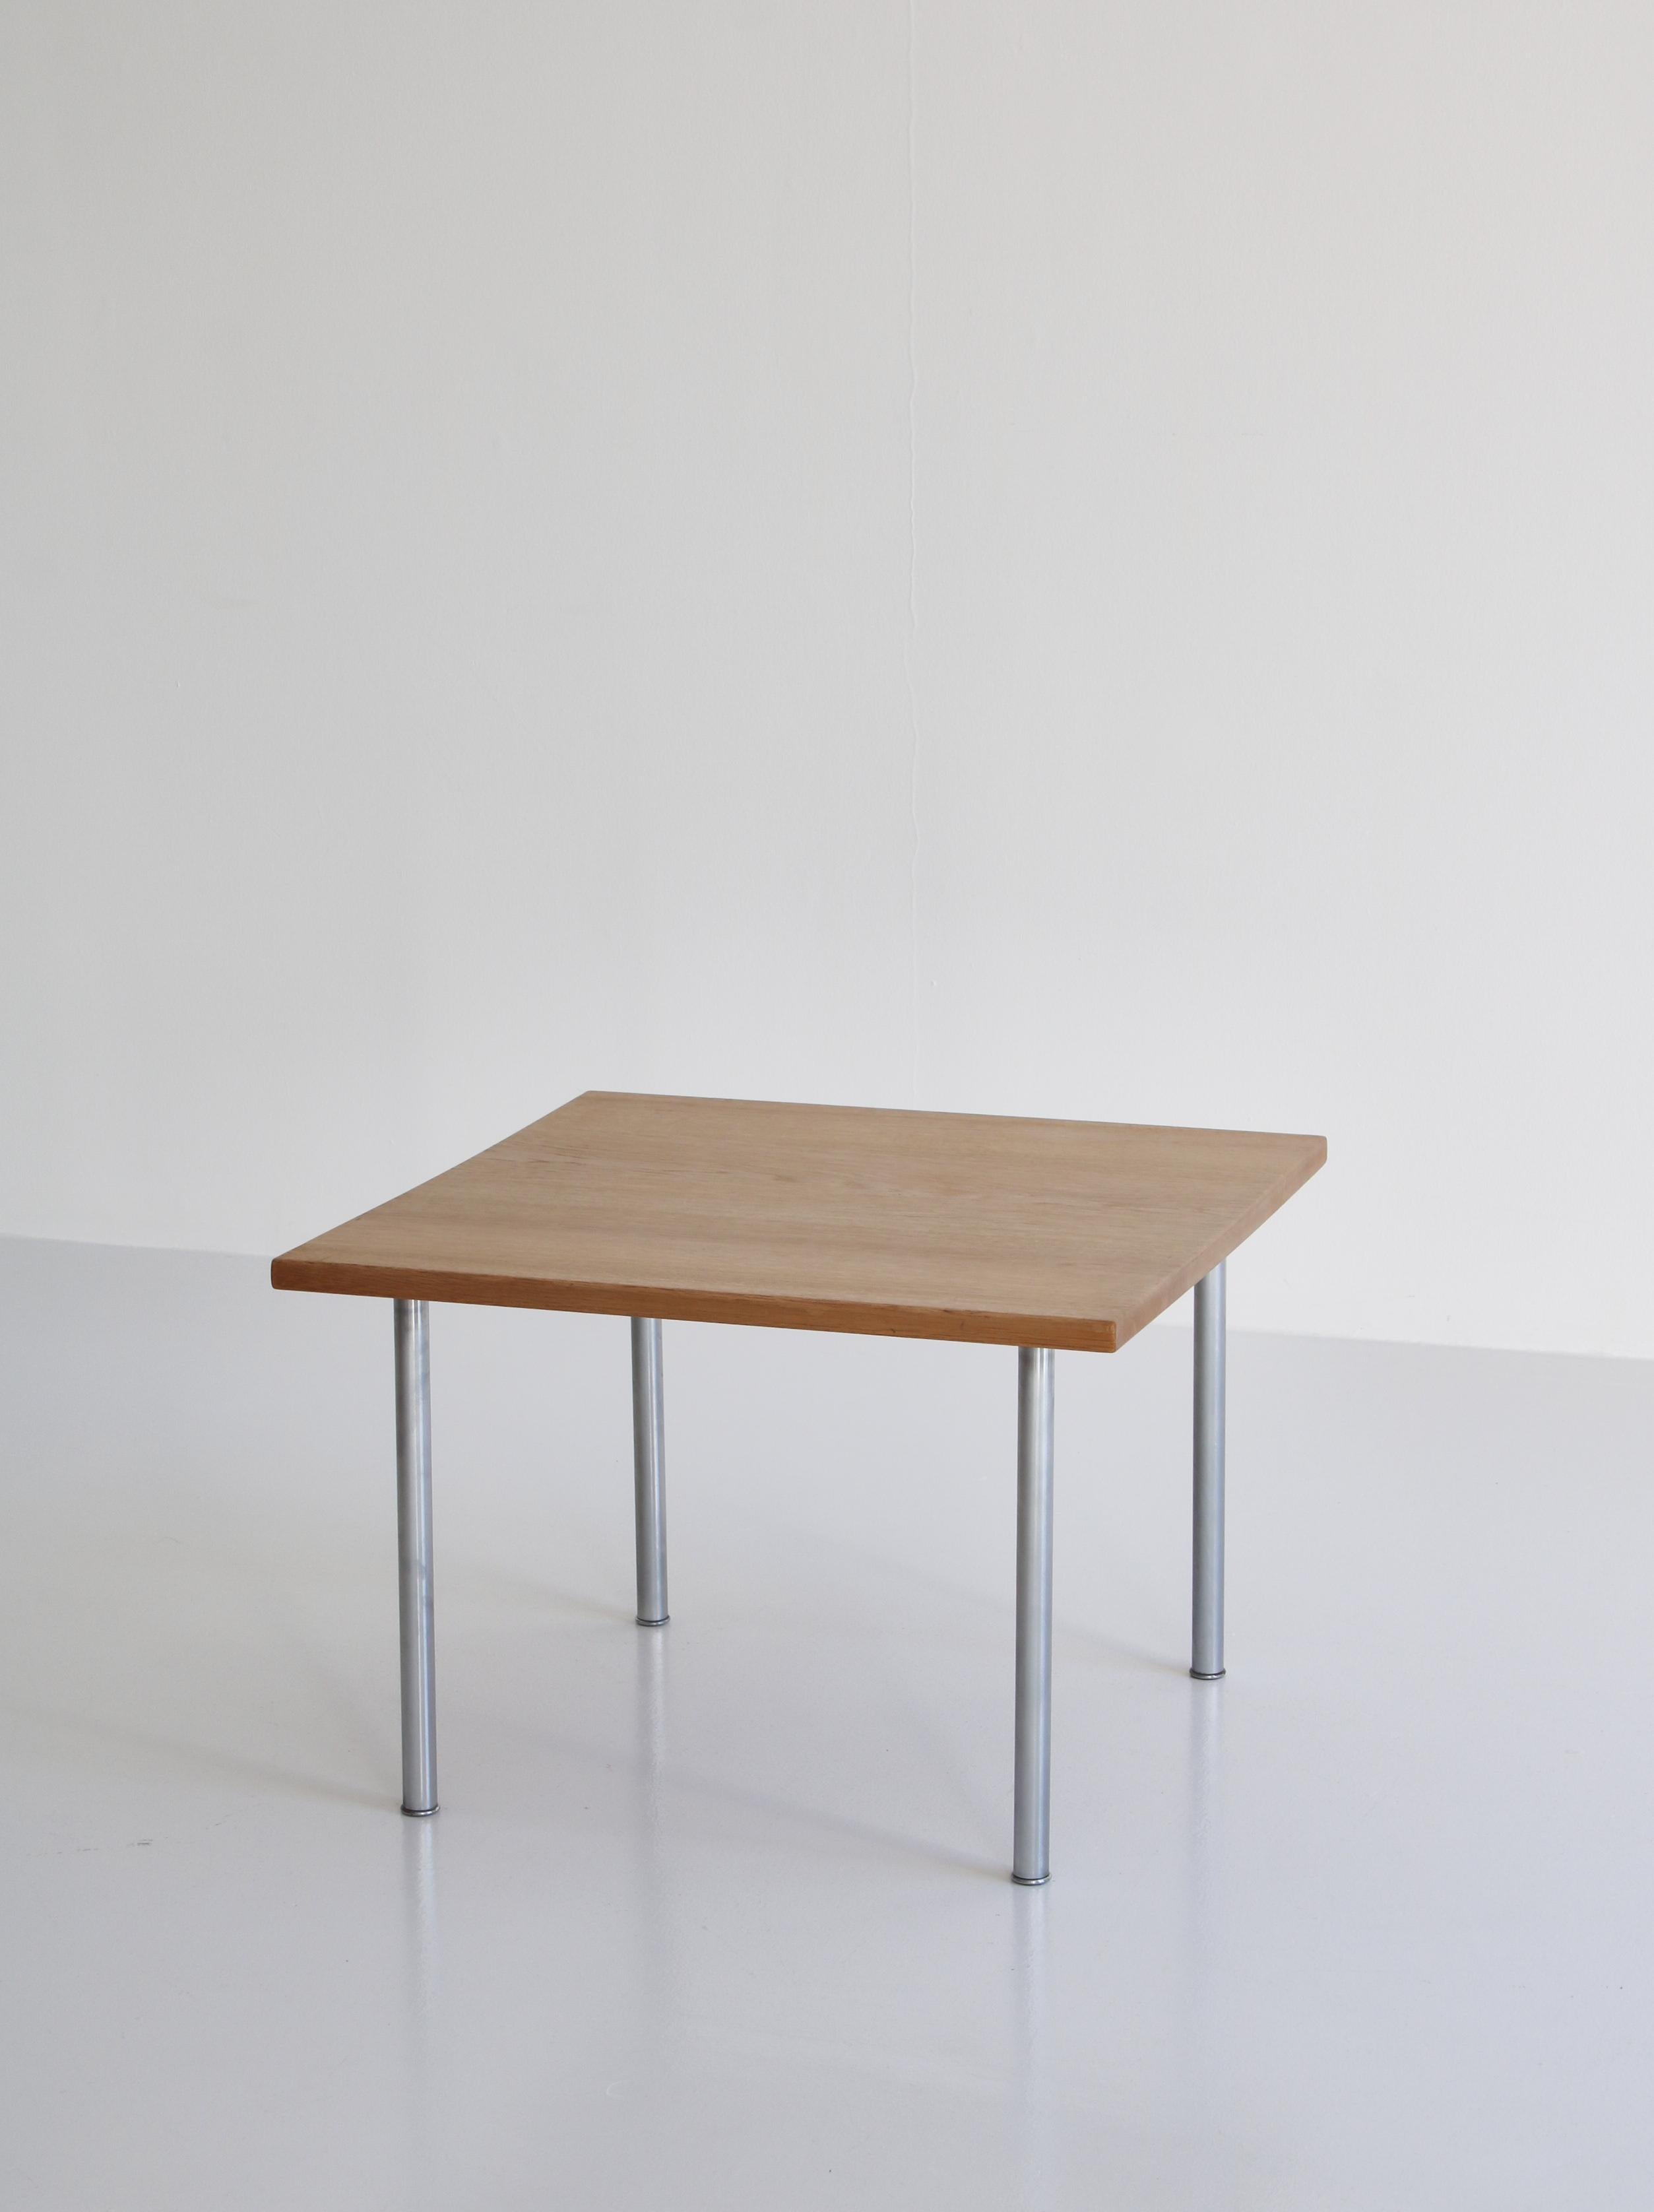 Danish Hans J. Wegner Side Table Model 